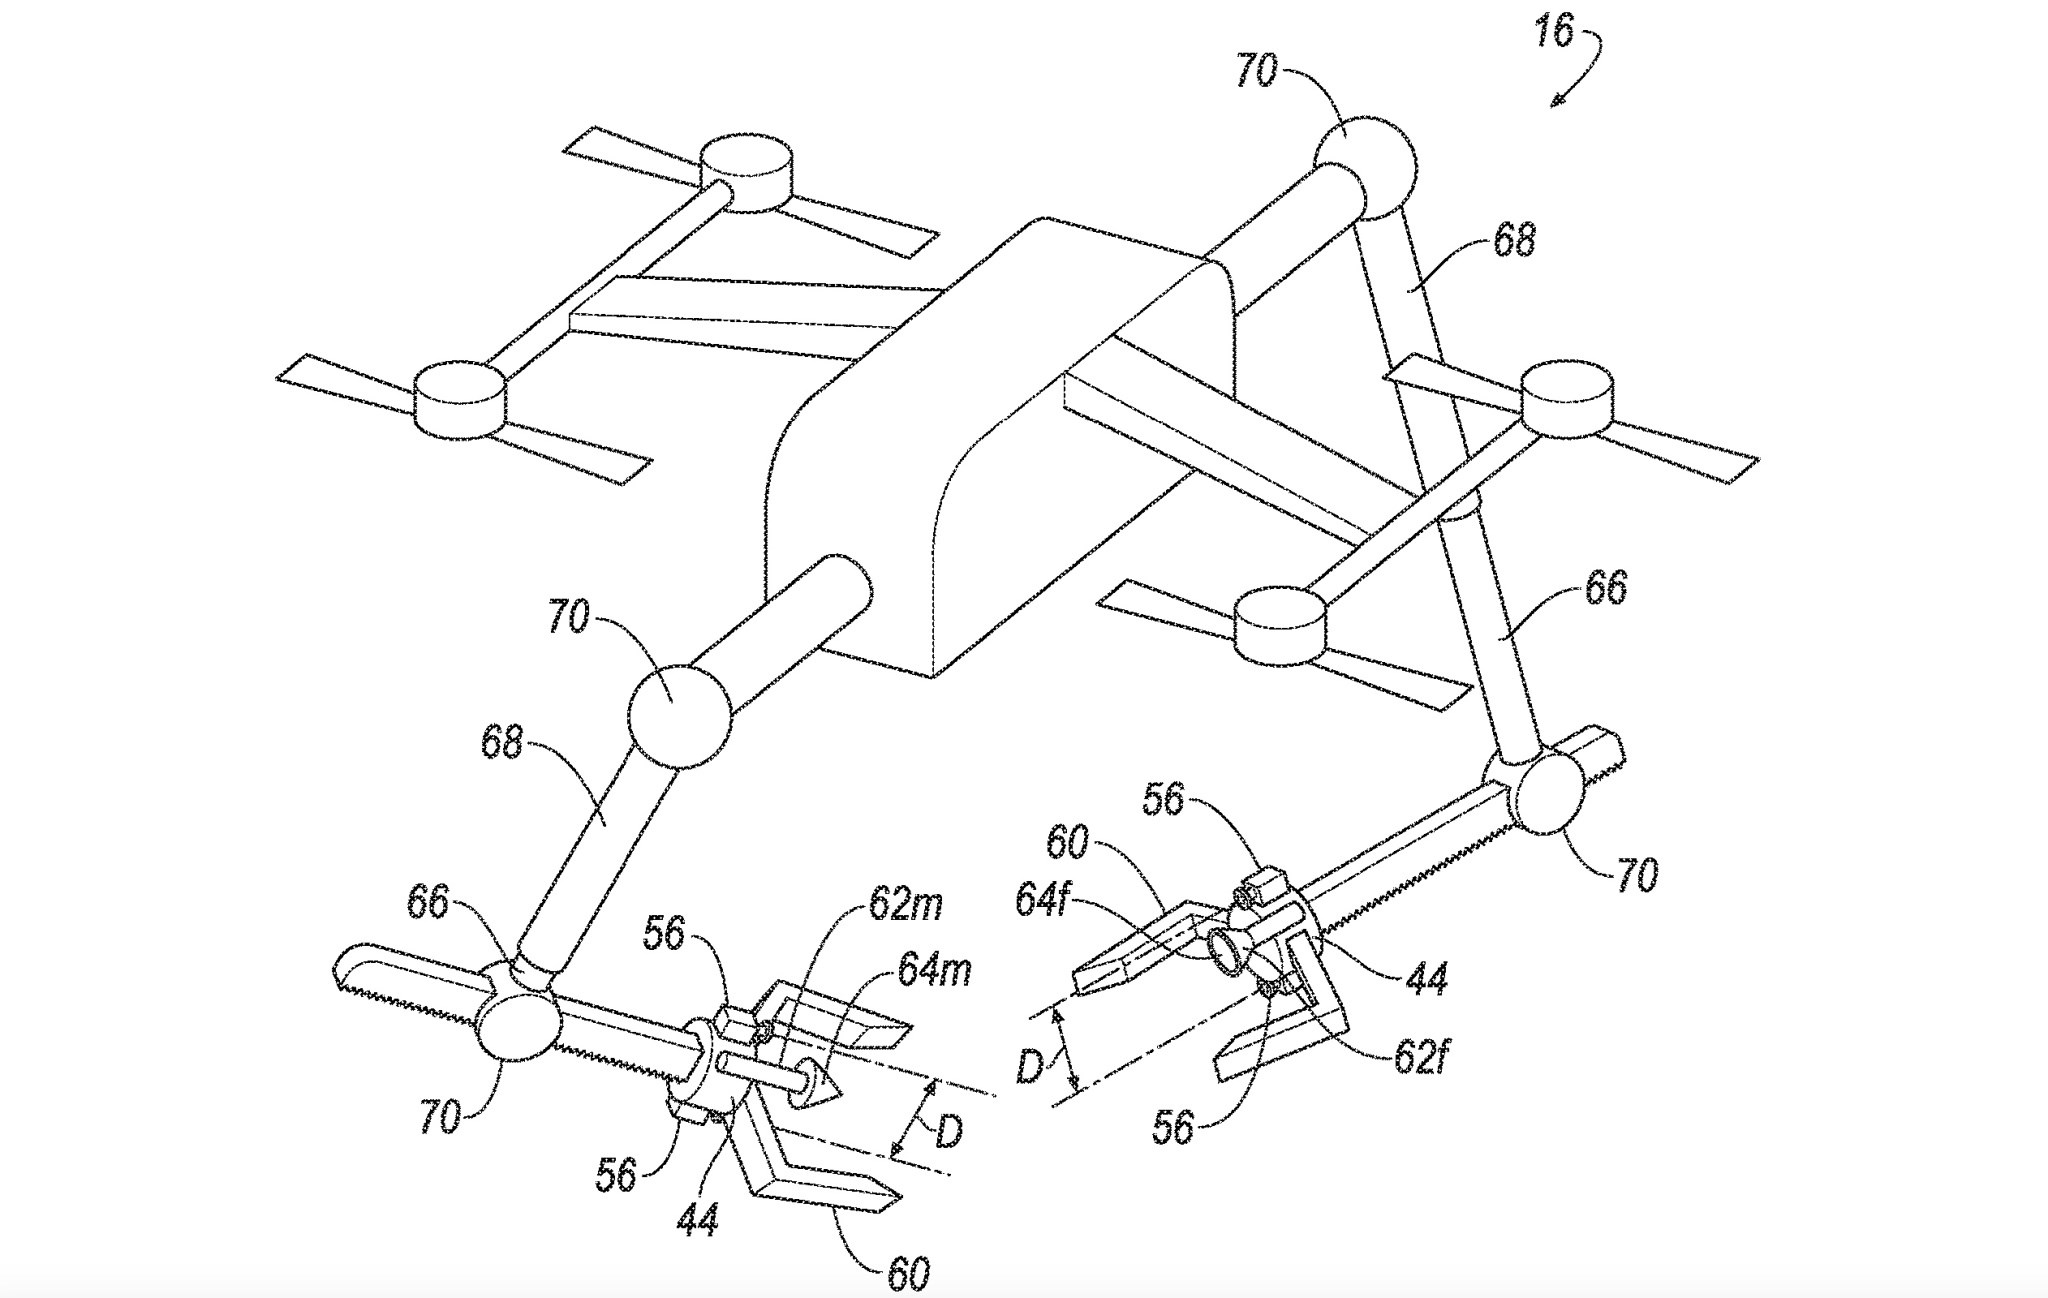 Ford'tan ilginç fikir: Drone'lar arabalara akü takviyesi yapacak